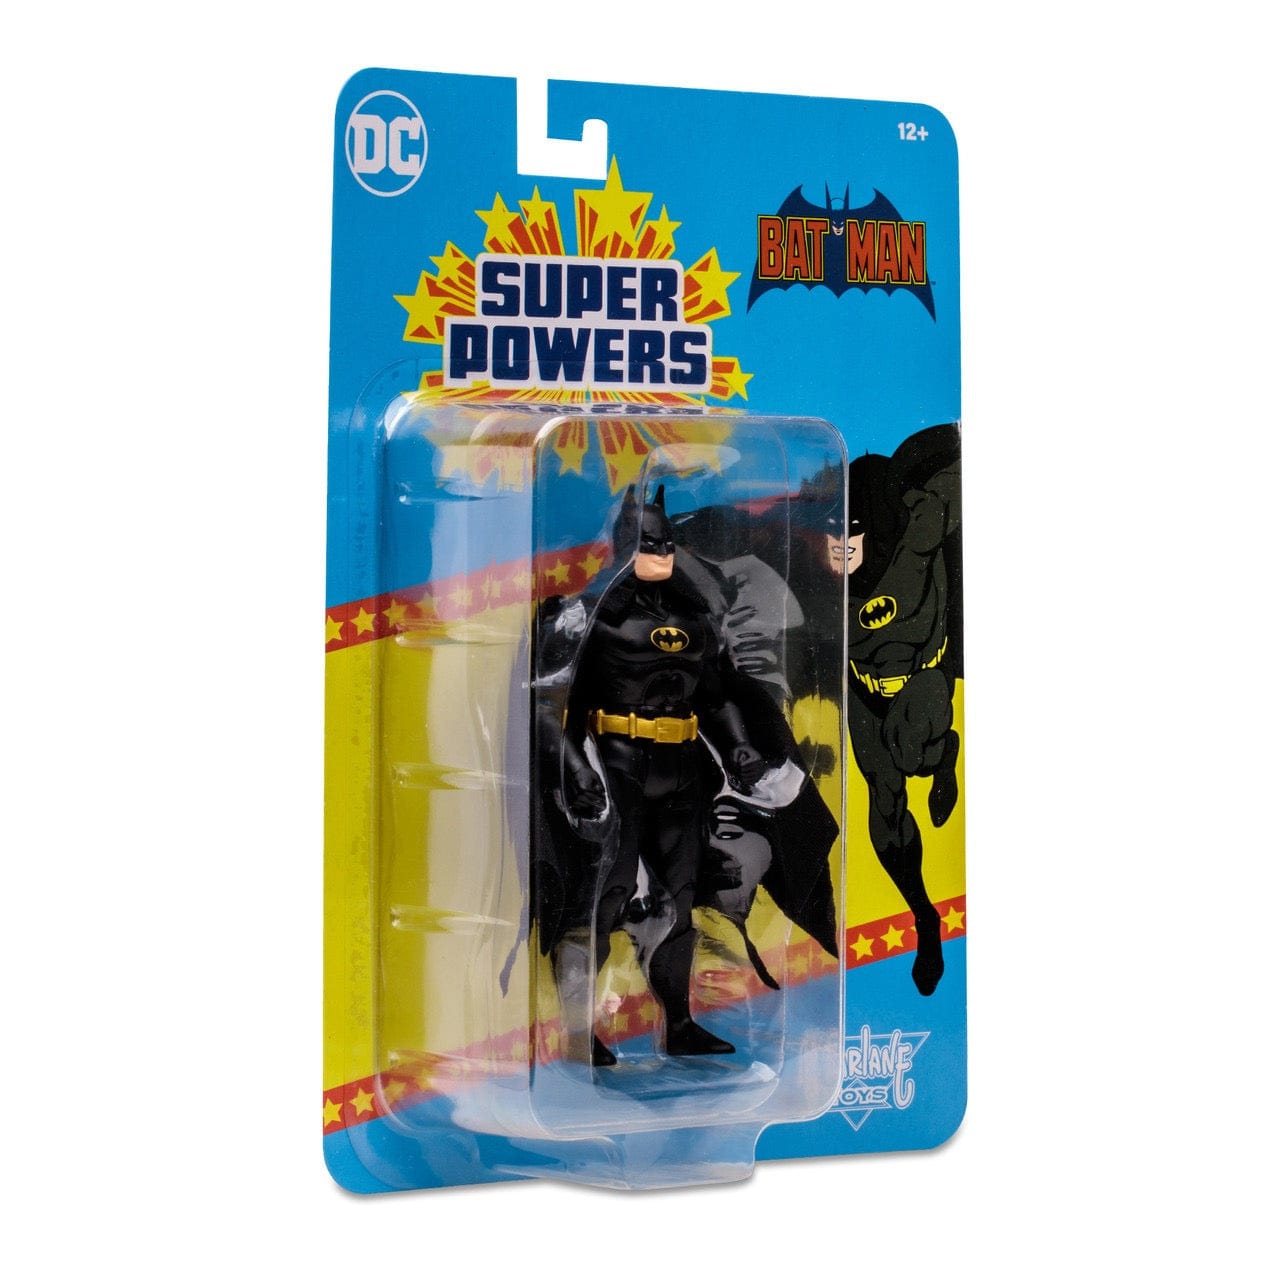 McFarlane Toys DC Super Powers Batman (Black Suit) Action Figure